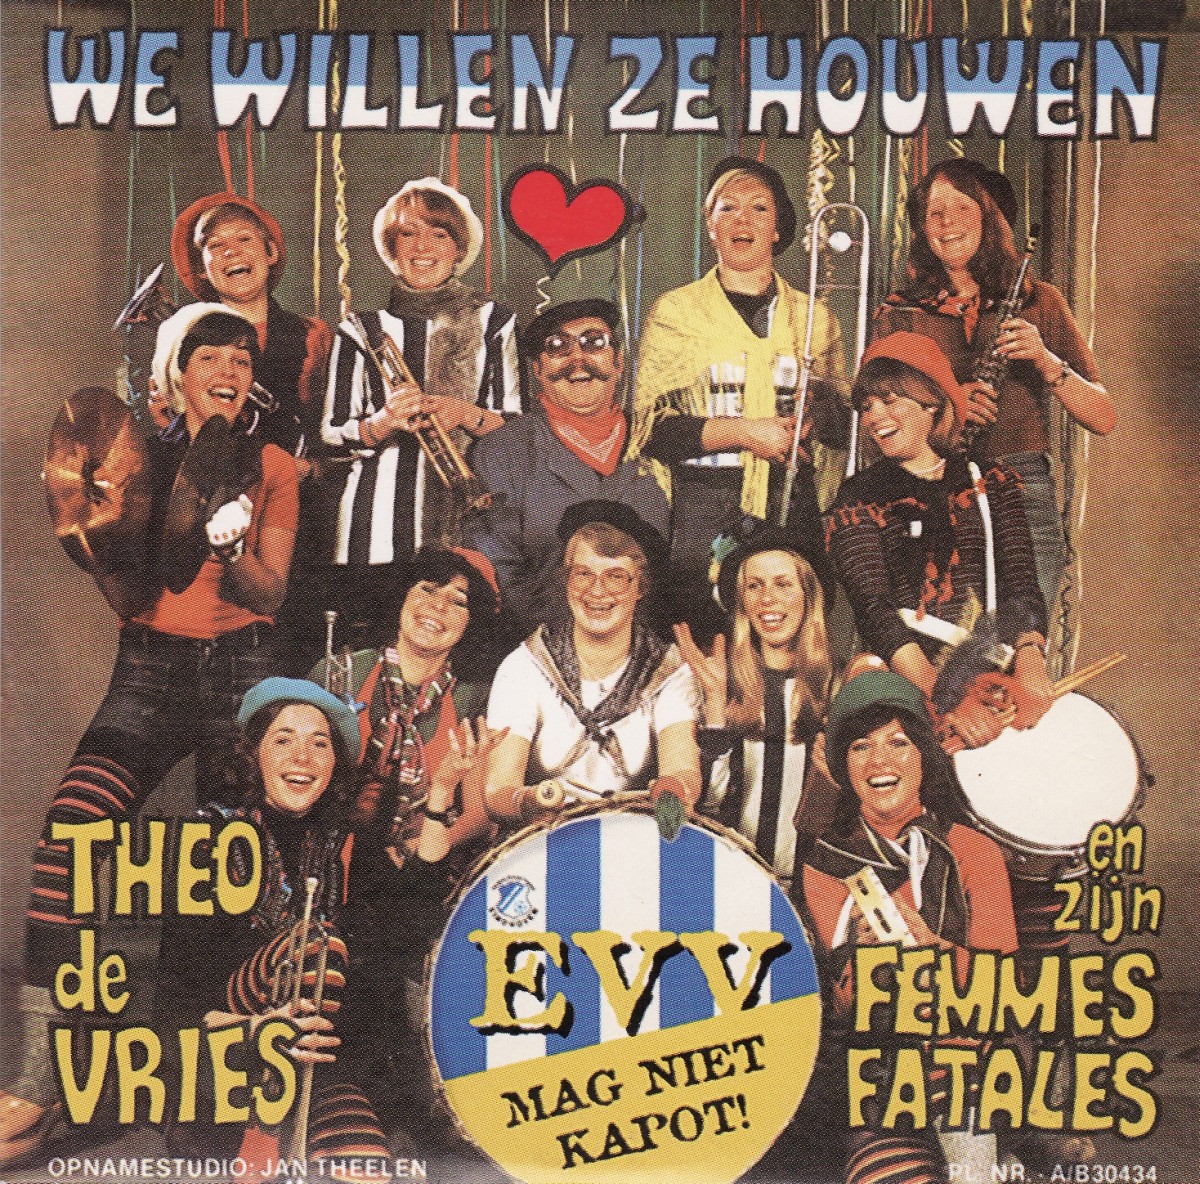 1978 Femmes Fatales   We Willen Ze Houwen